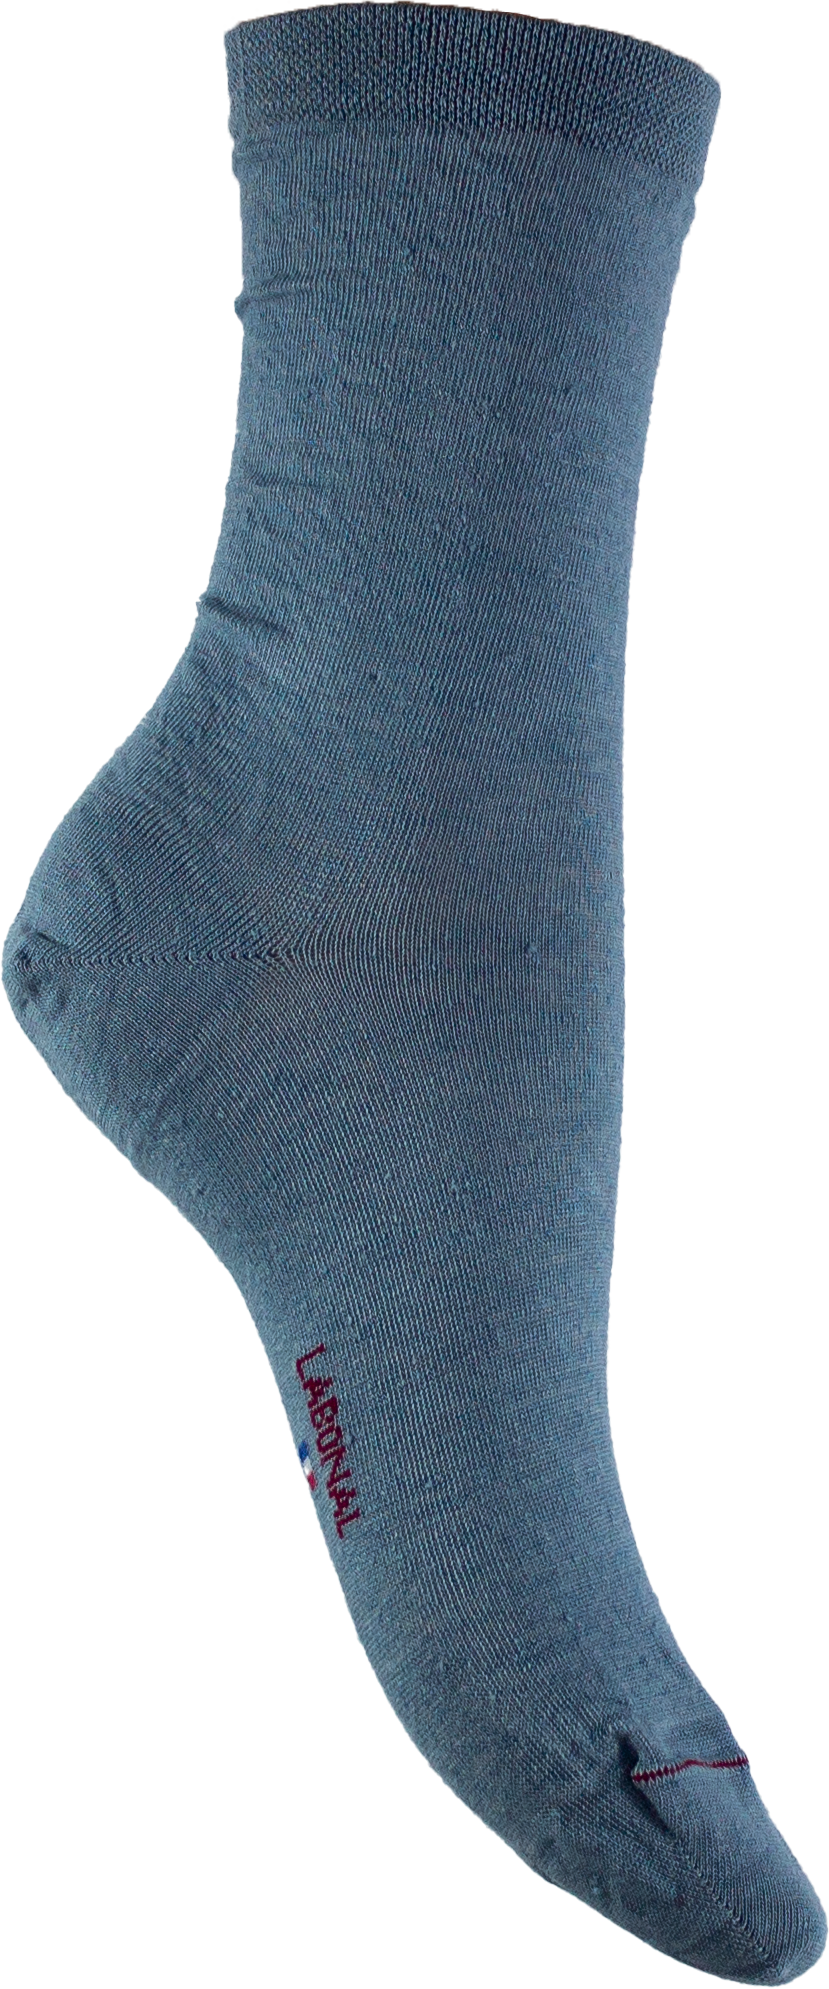 Women's high plain linen socks